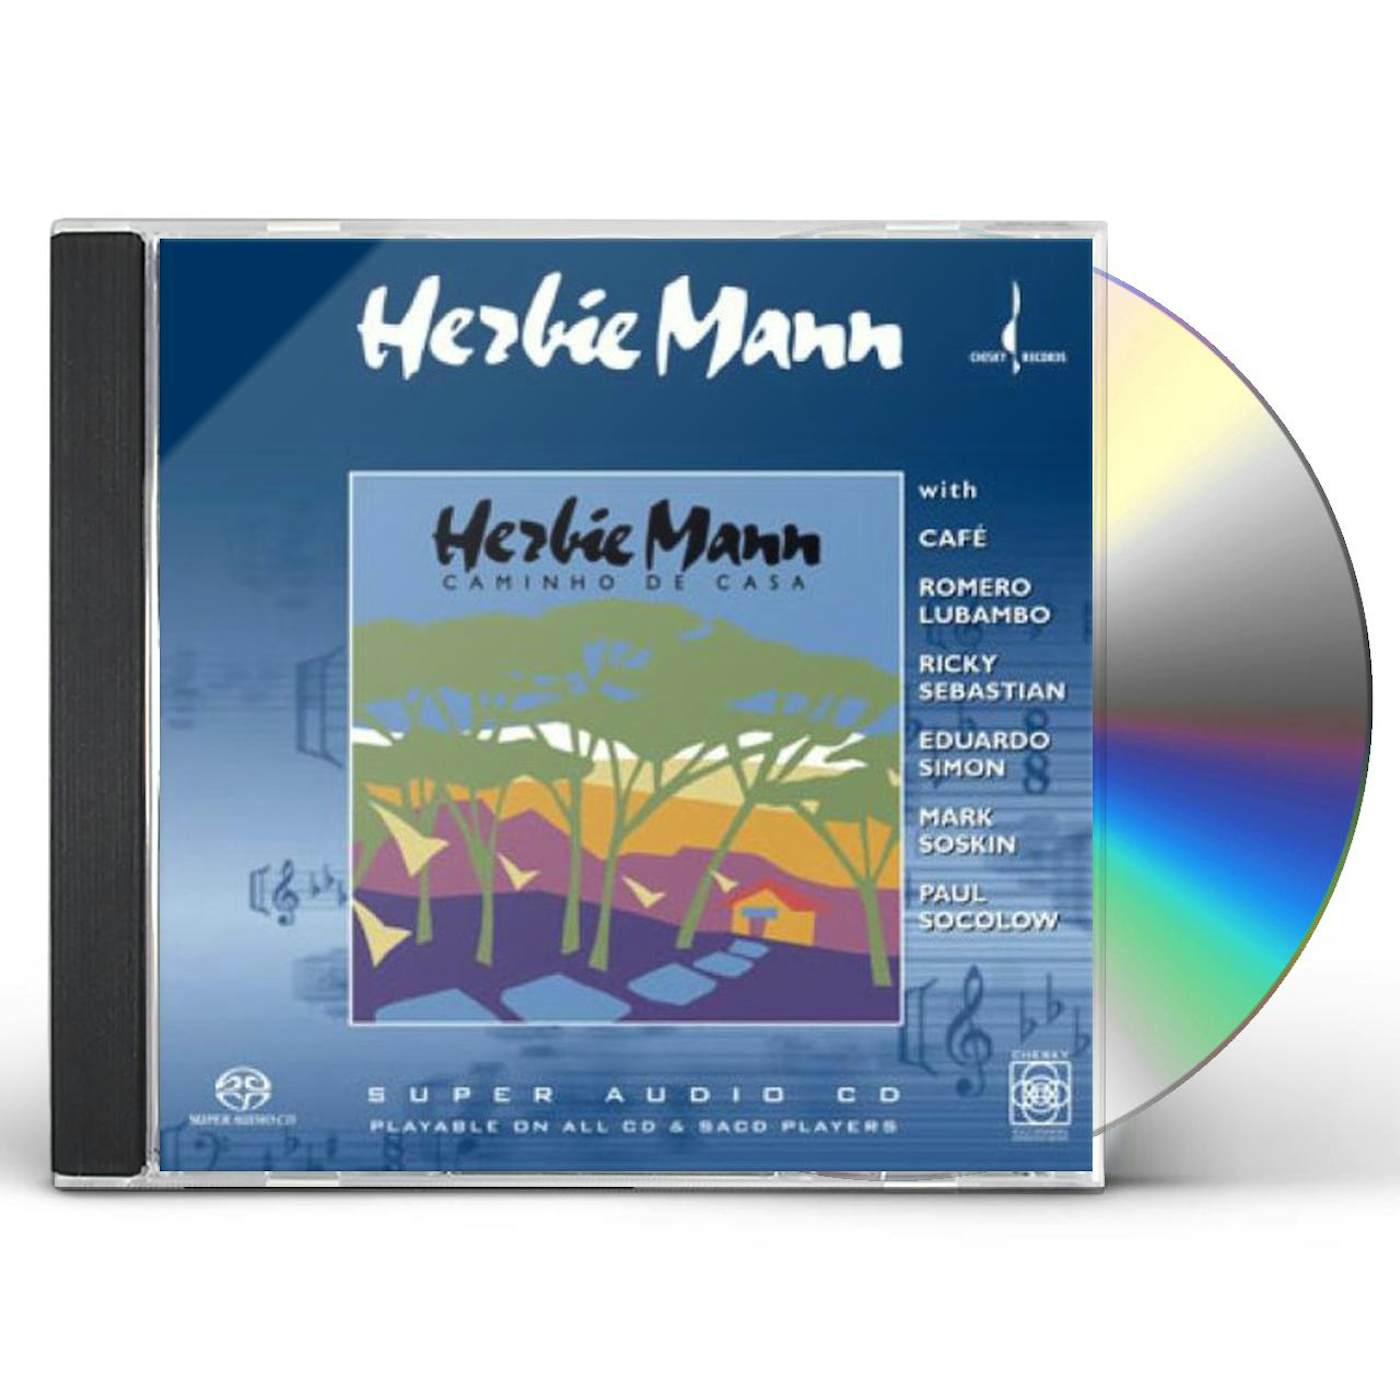 Herbie Mann CAMINHO DE CASA Super Audio CD